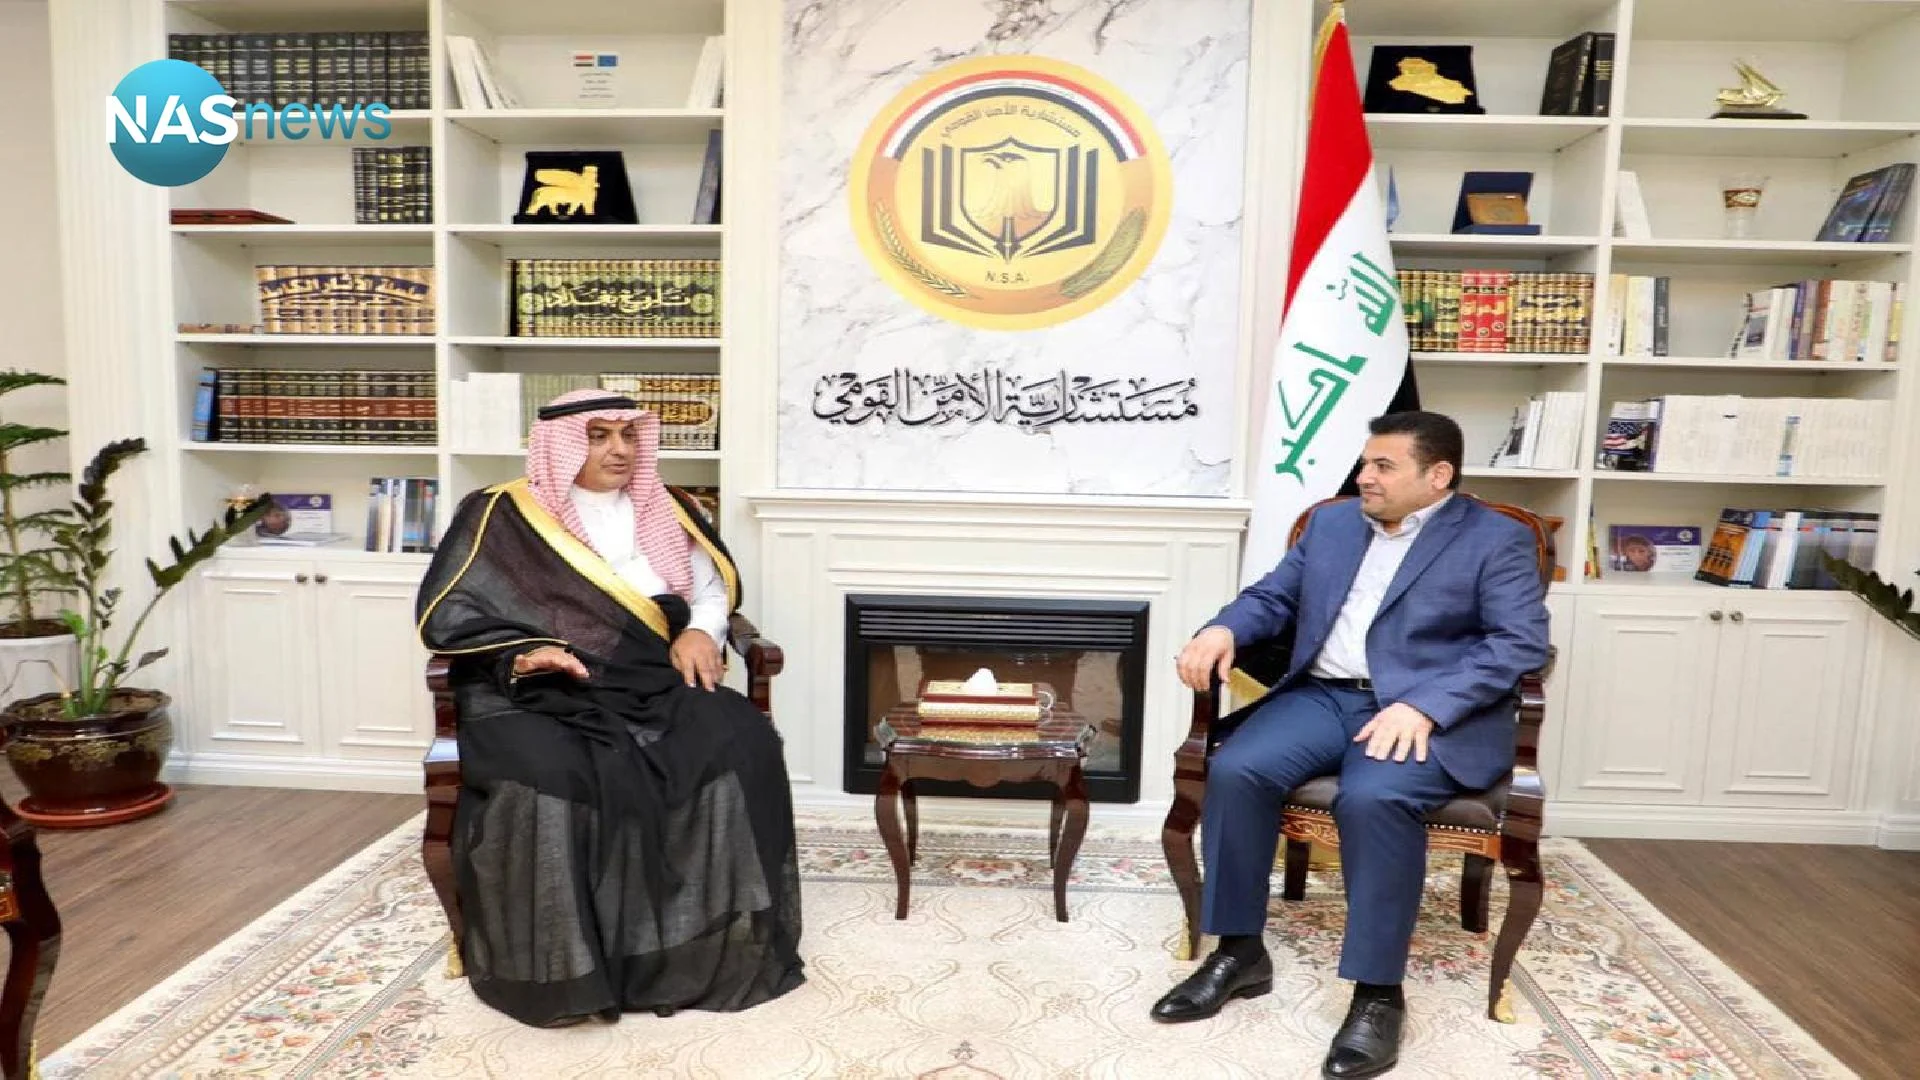 ثبات بیشتر در منطقه، محور دیدار مشاور امنیت ملی عراق و سفیر عربستان